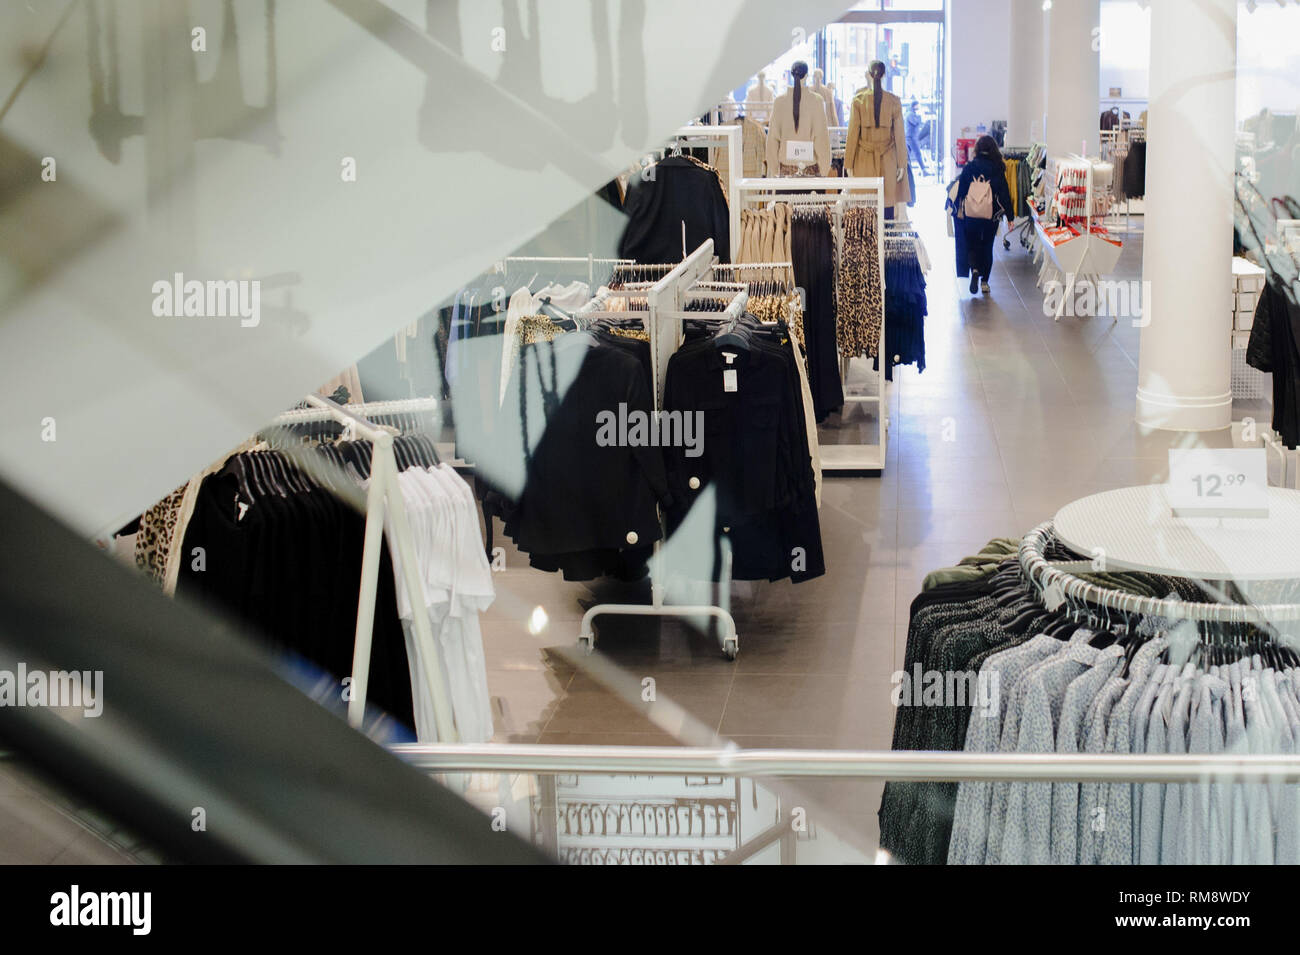 Vu une femme à l'intérieur du centre commercial Regent Street branch du détaillant de vêtements H&M dans le centre de Londres. Le 15 février marque la sortie de la première les chiffres des ventes au détail mensuelles de l'année (janvier) à partir de la UK's Office for National Statistics. Les chiffres de décembre ont révélé une baisse de 0,9 pour cent des ventes du mois précédent, qui a enregistré une hausse de 1,4  % largement attribué à l'impact de la 'Black Friday' traite encourageant à l'heure des achats de Noël. Plus généralement, avec un potentiel non-deal départ de l'UE de plus en plus en plus continue de miner la confiance des consommateurs au Royaume-Uni, de l'économie-watchers hav Banque D'Images